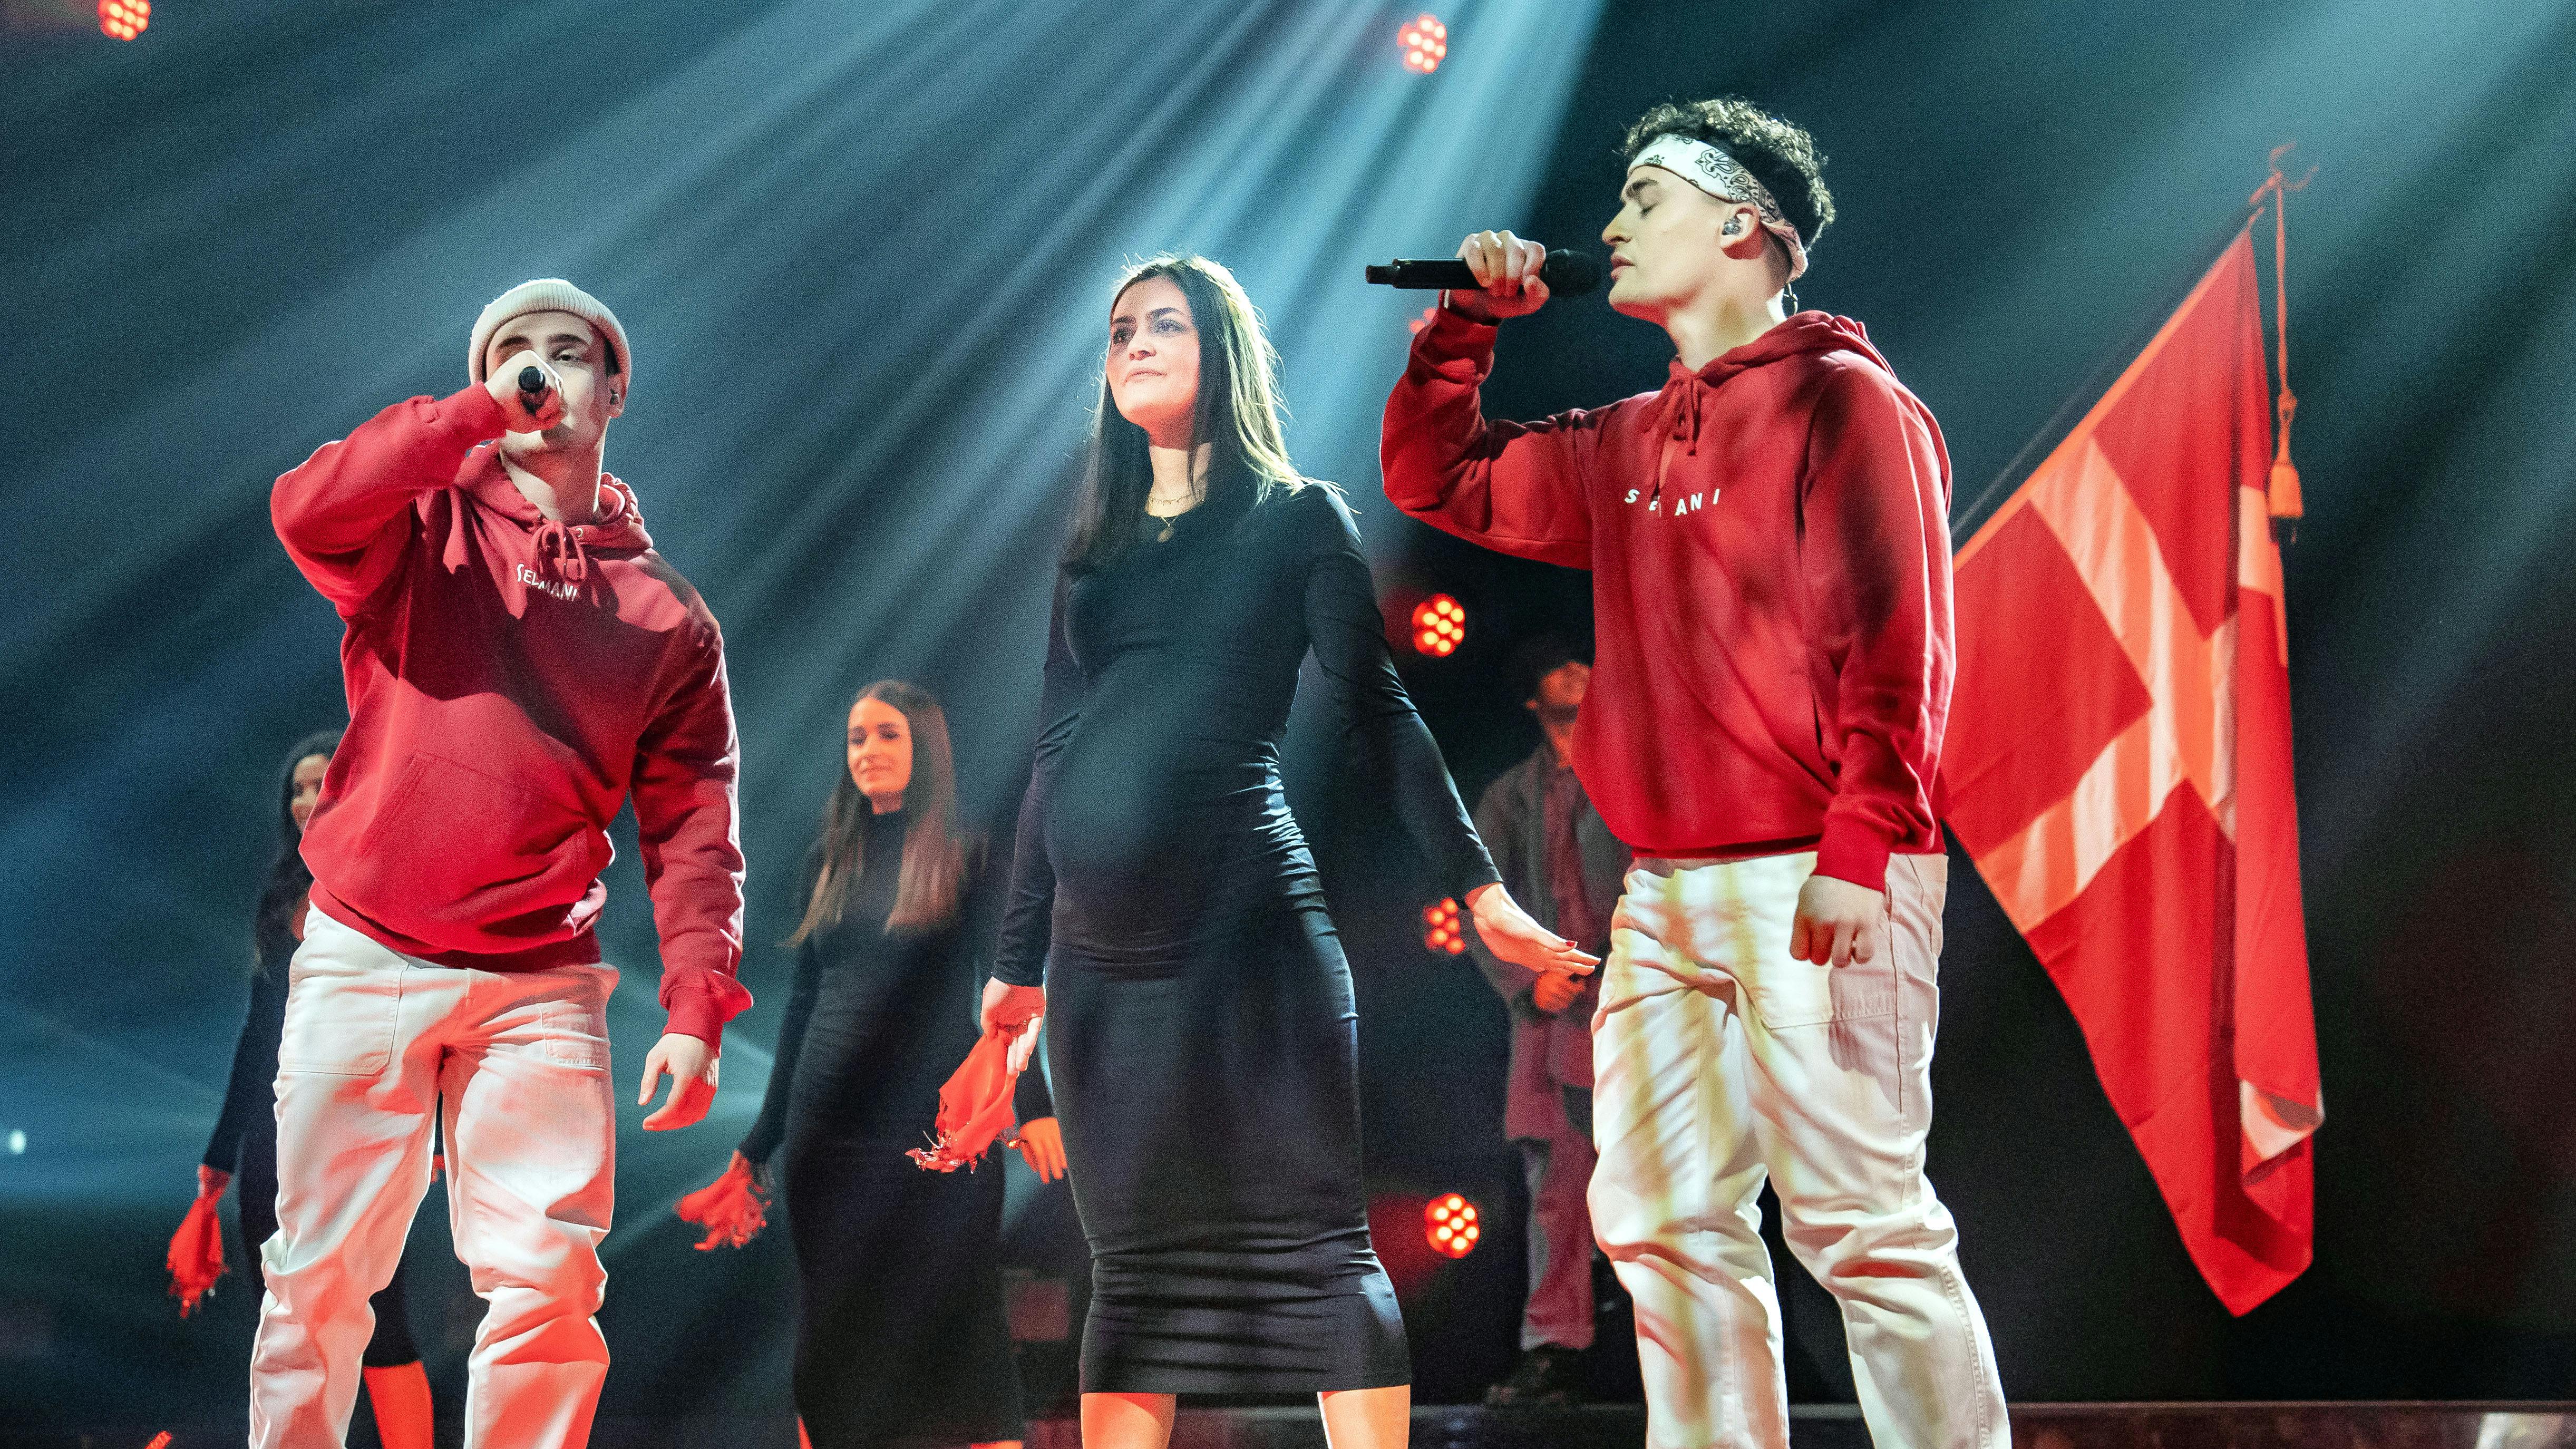 OPGAVE: X Factor Live 5STED: PriorparkenJOURNALIST: Alberte Skoglund og Oliver MorellFOTOGRAF: Hanne JuulDATO: 202403023